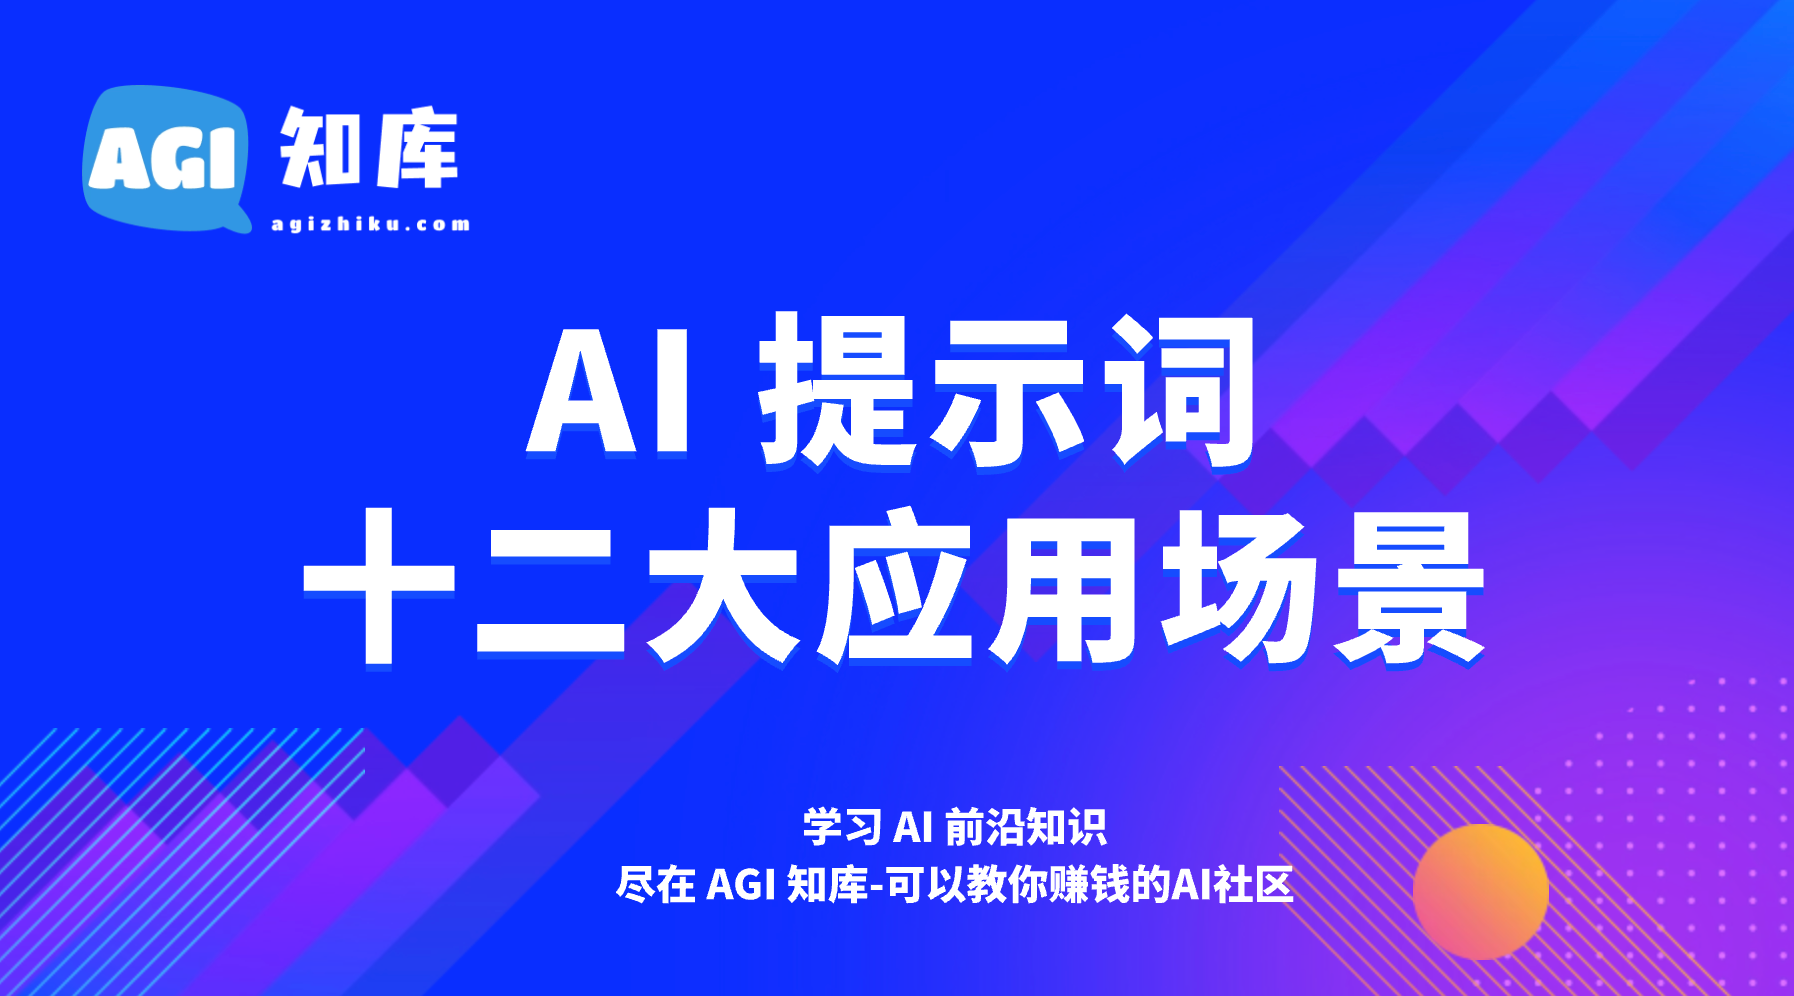 175种ChatGPT AI提示词训练指令模板-关键字生成-AGI智库-全国最大的AI智库社区 | AI导航 | AI学习网站